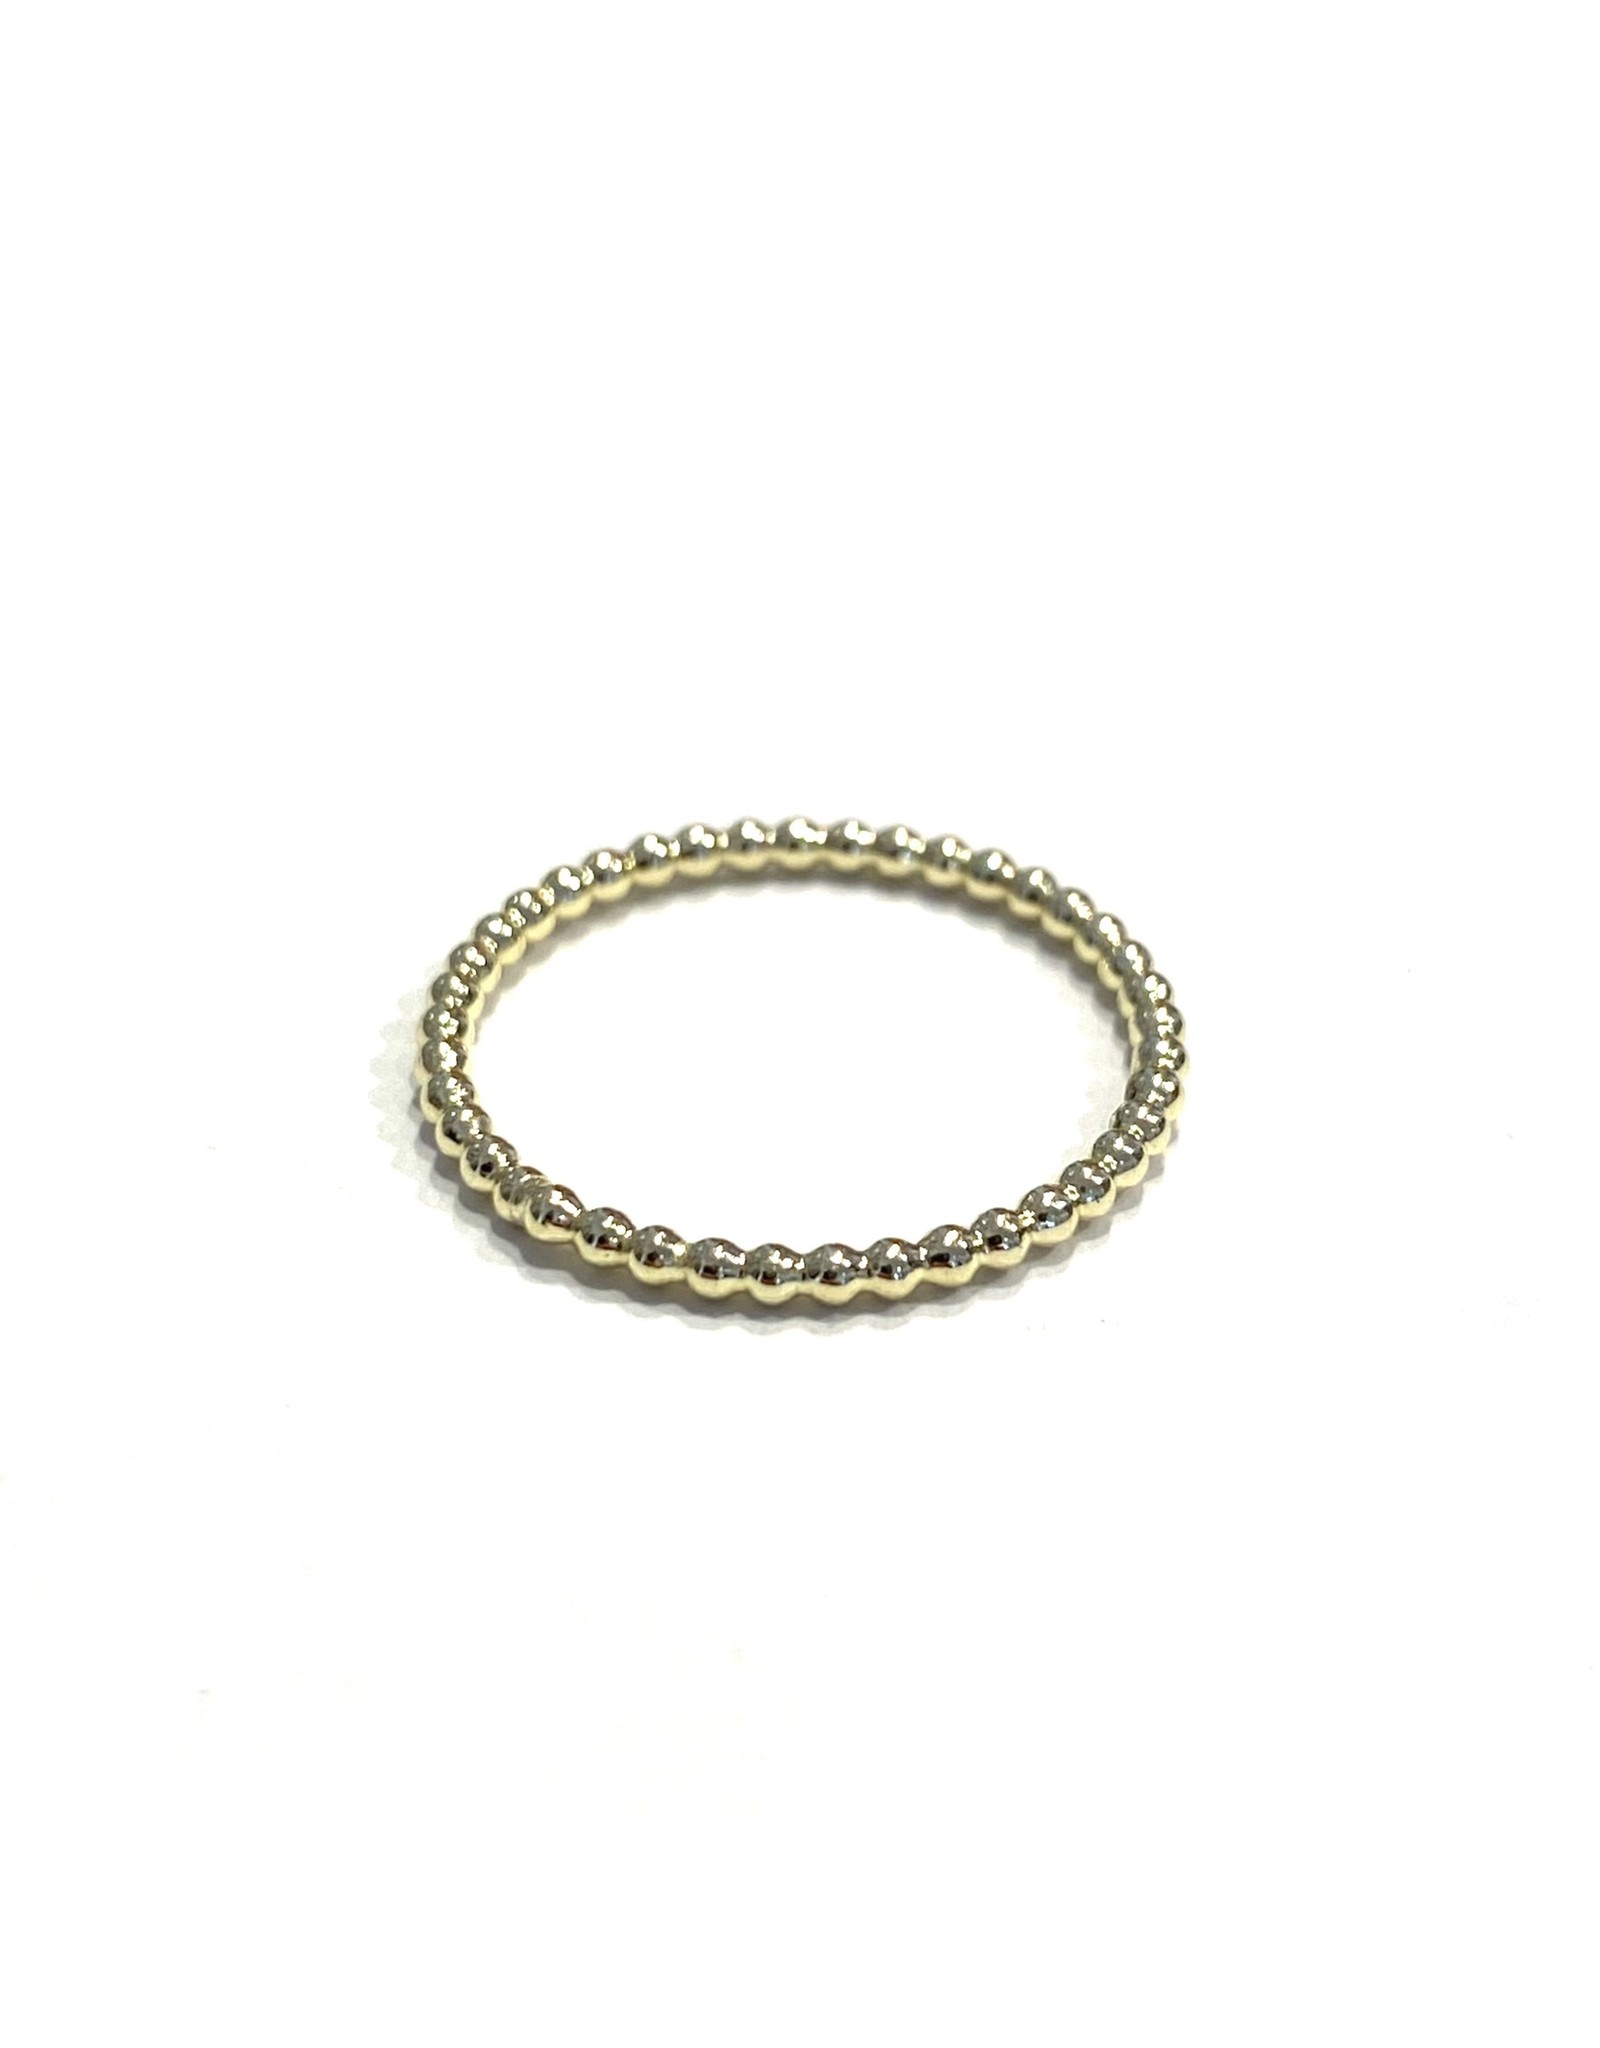 Bo Gold Ring - Goud